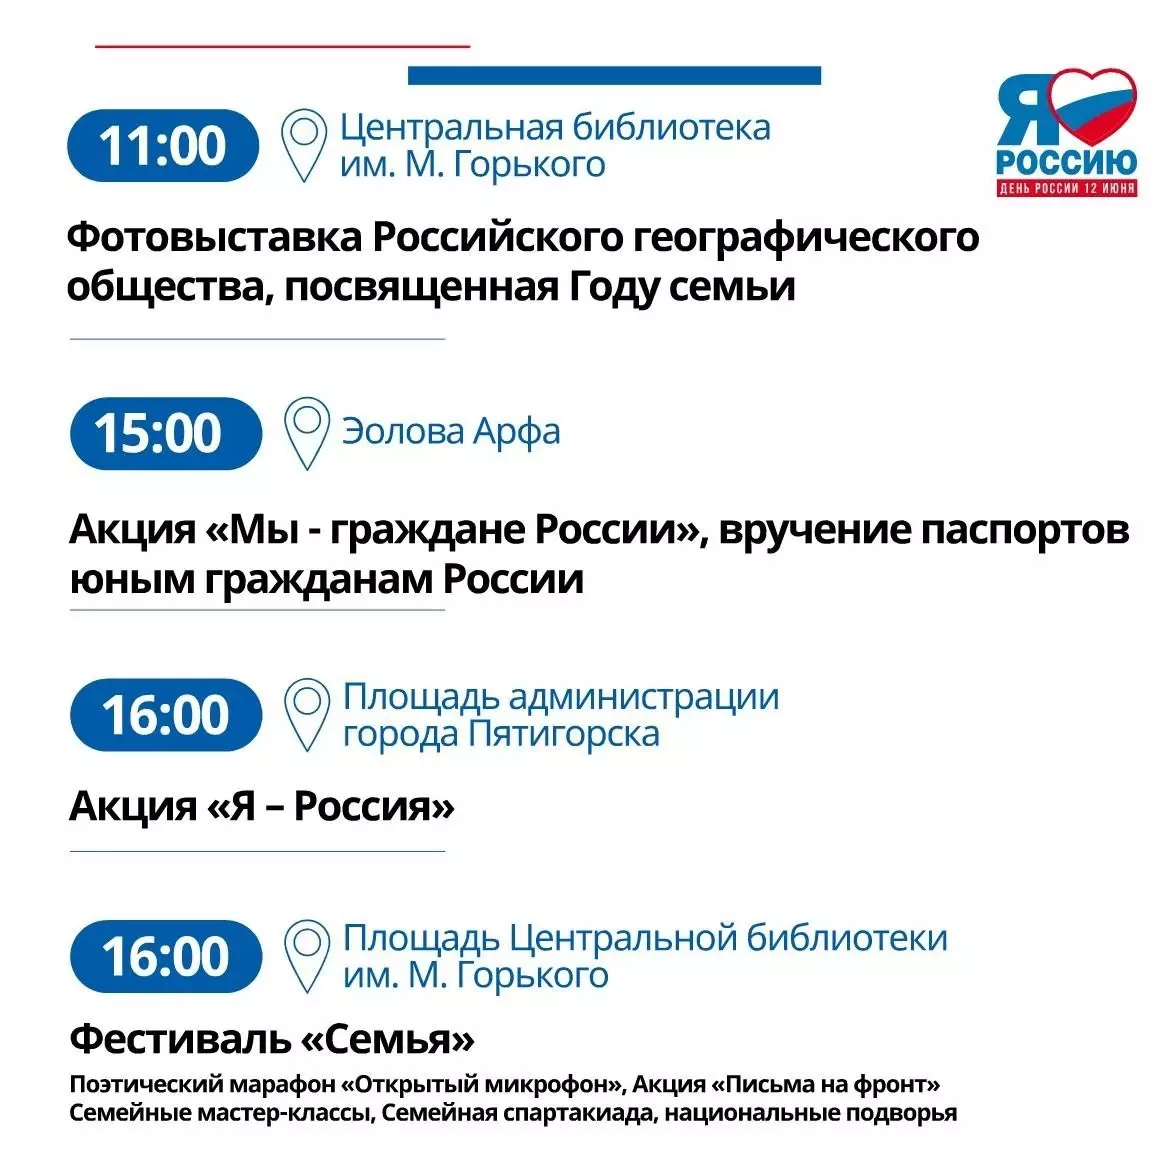 Программу мероприятий на День России составили в Пятигорске5